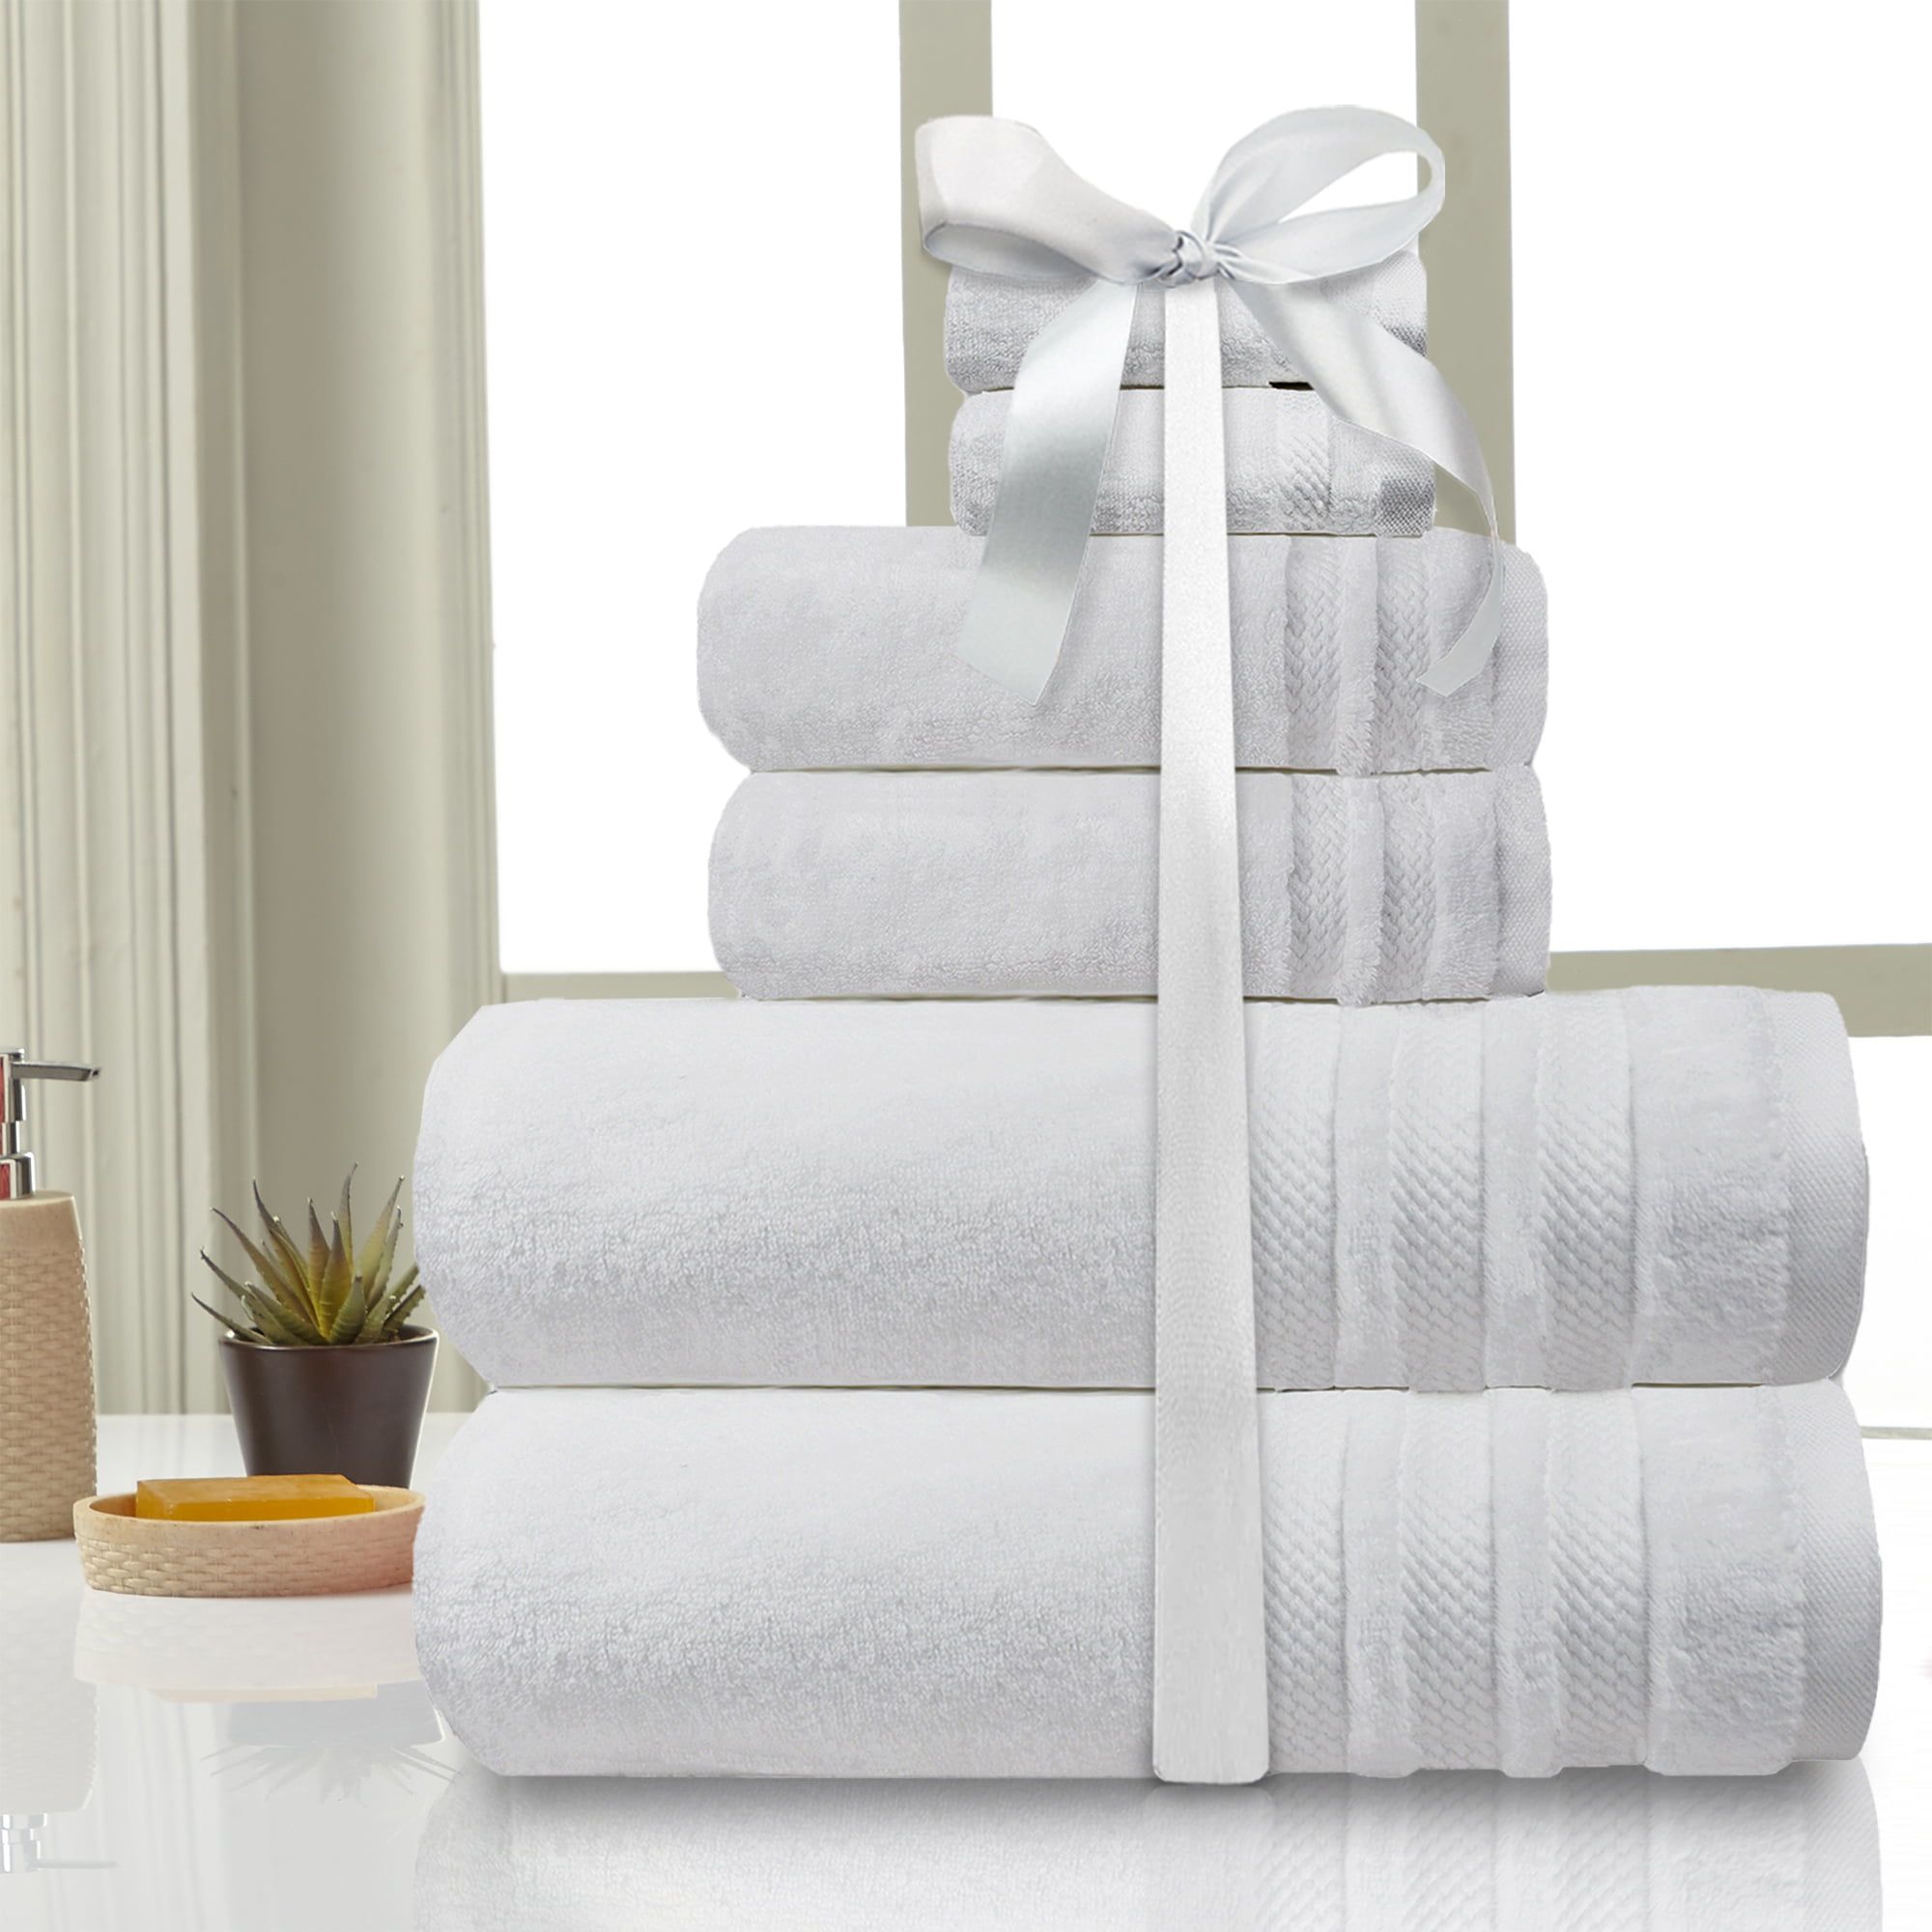  Homestead Textiles Growers Collection 100-Percent Zero-Twist  Pima Cotton 4-Piece Bath Towel Set, Latte : Home & Kitchen